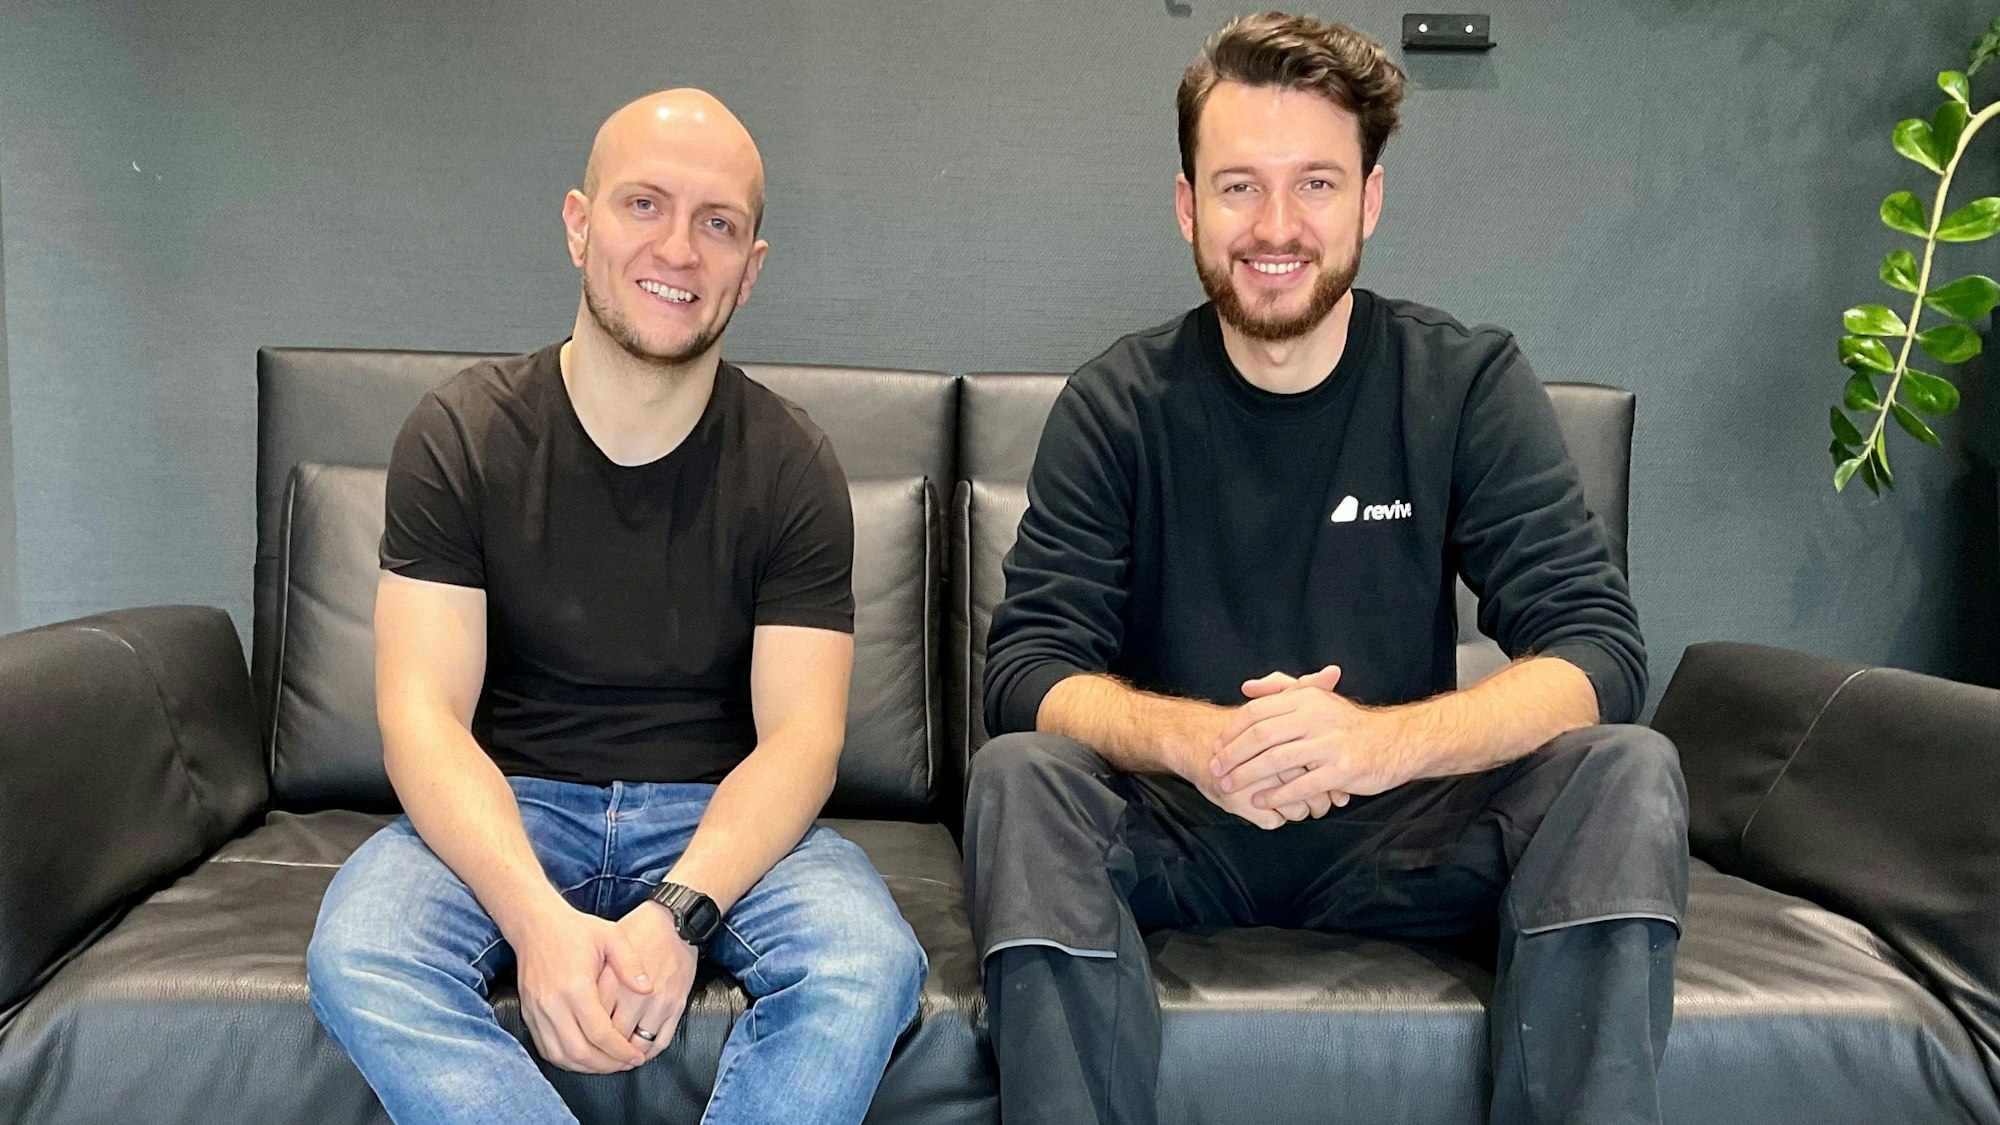 Zwei junge Männer sitzen auf einem Sofa, die Firmengründer von Revive